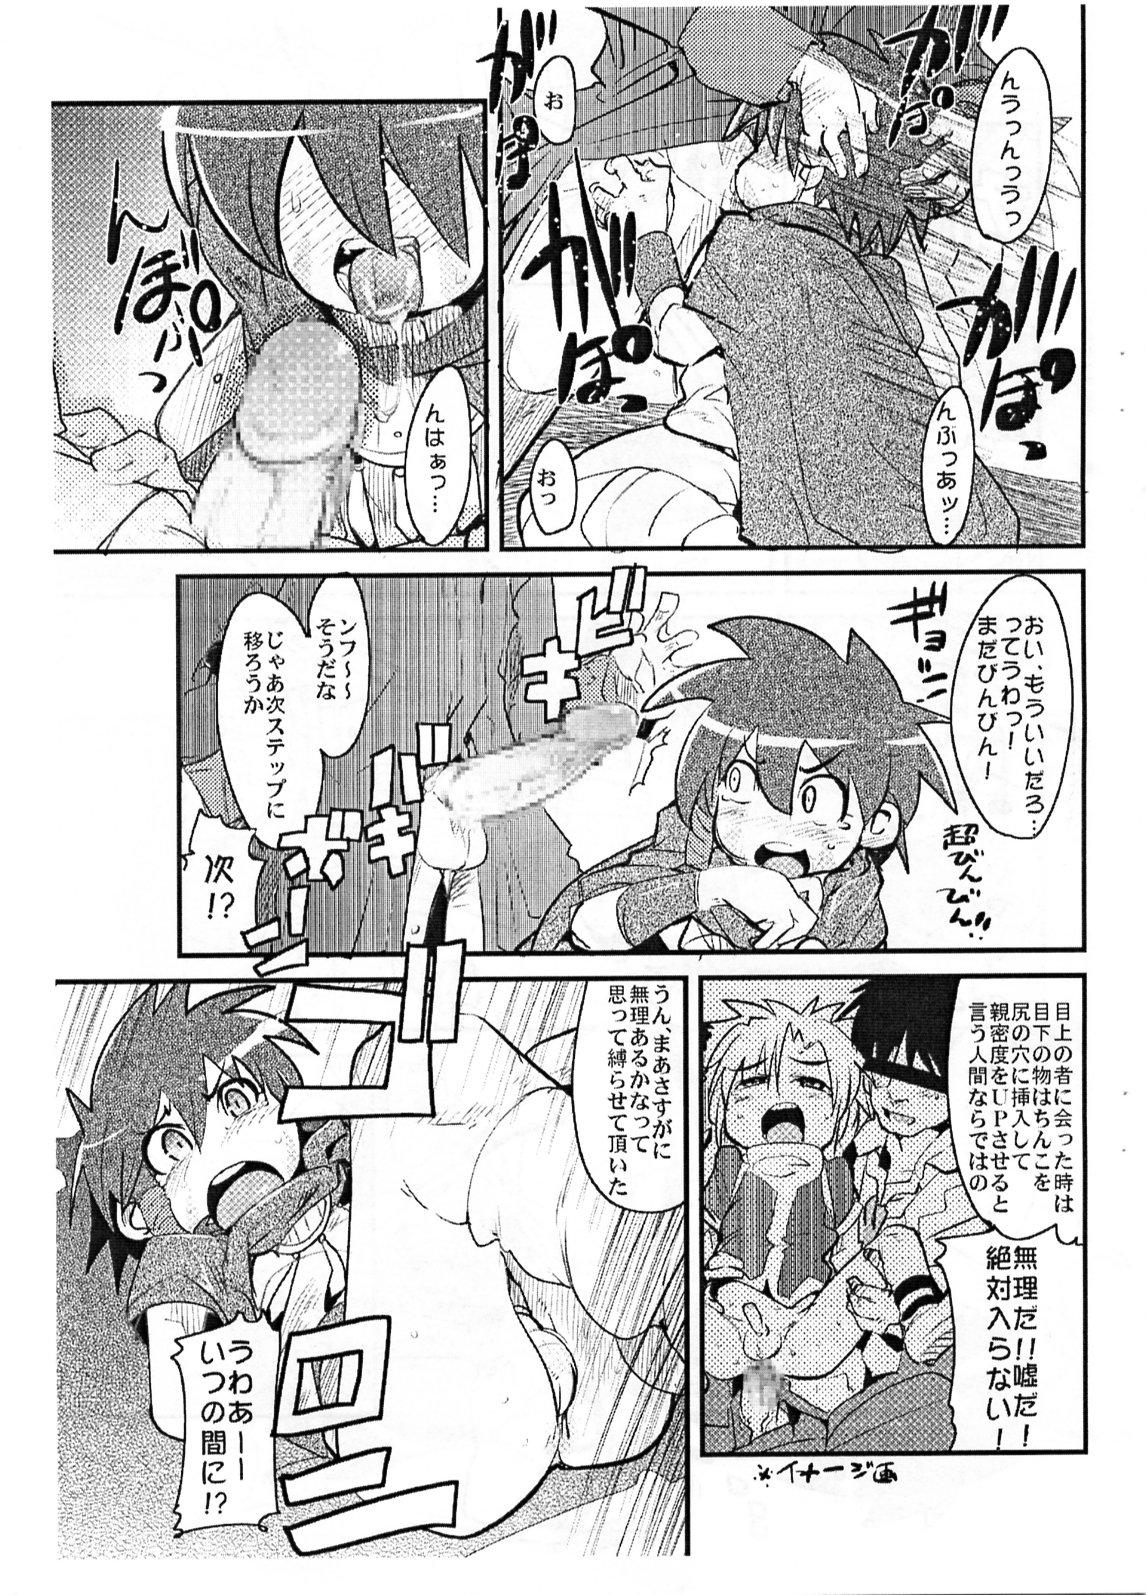 Realsex Yaseiji ni iroiro oshieru hon nano da - Digimon savers Muscles - Page 6